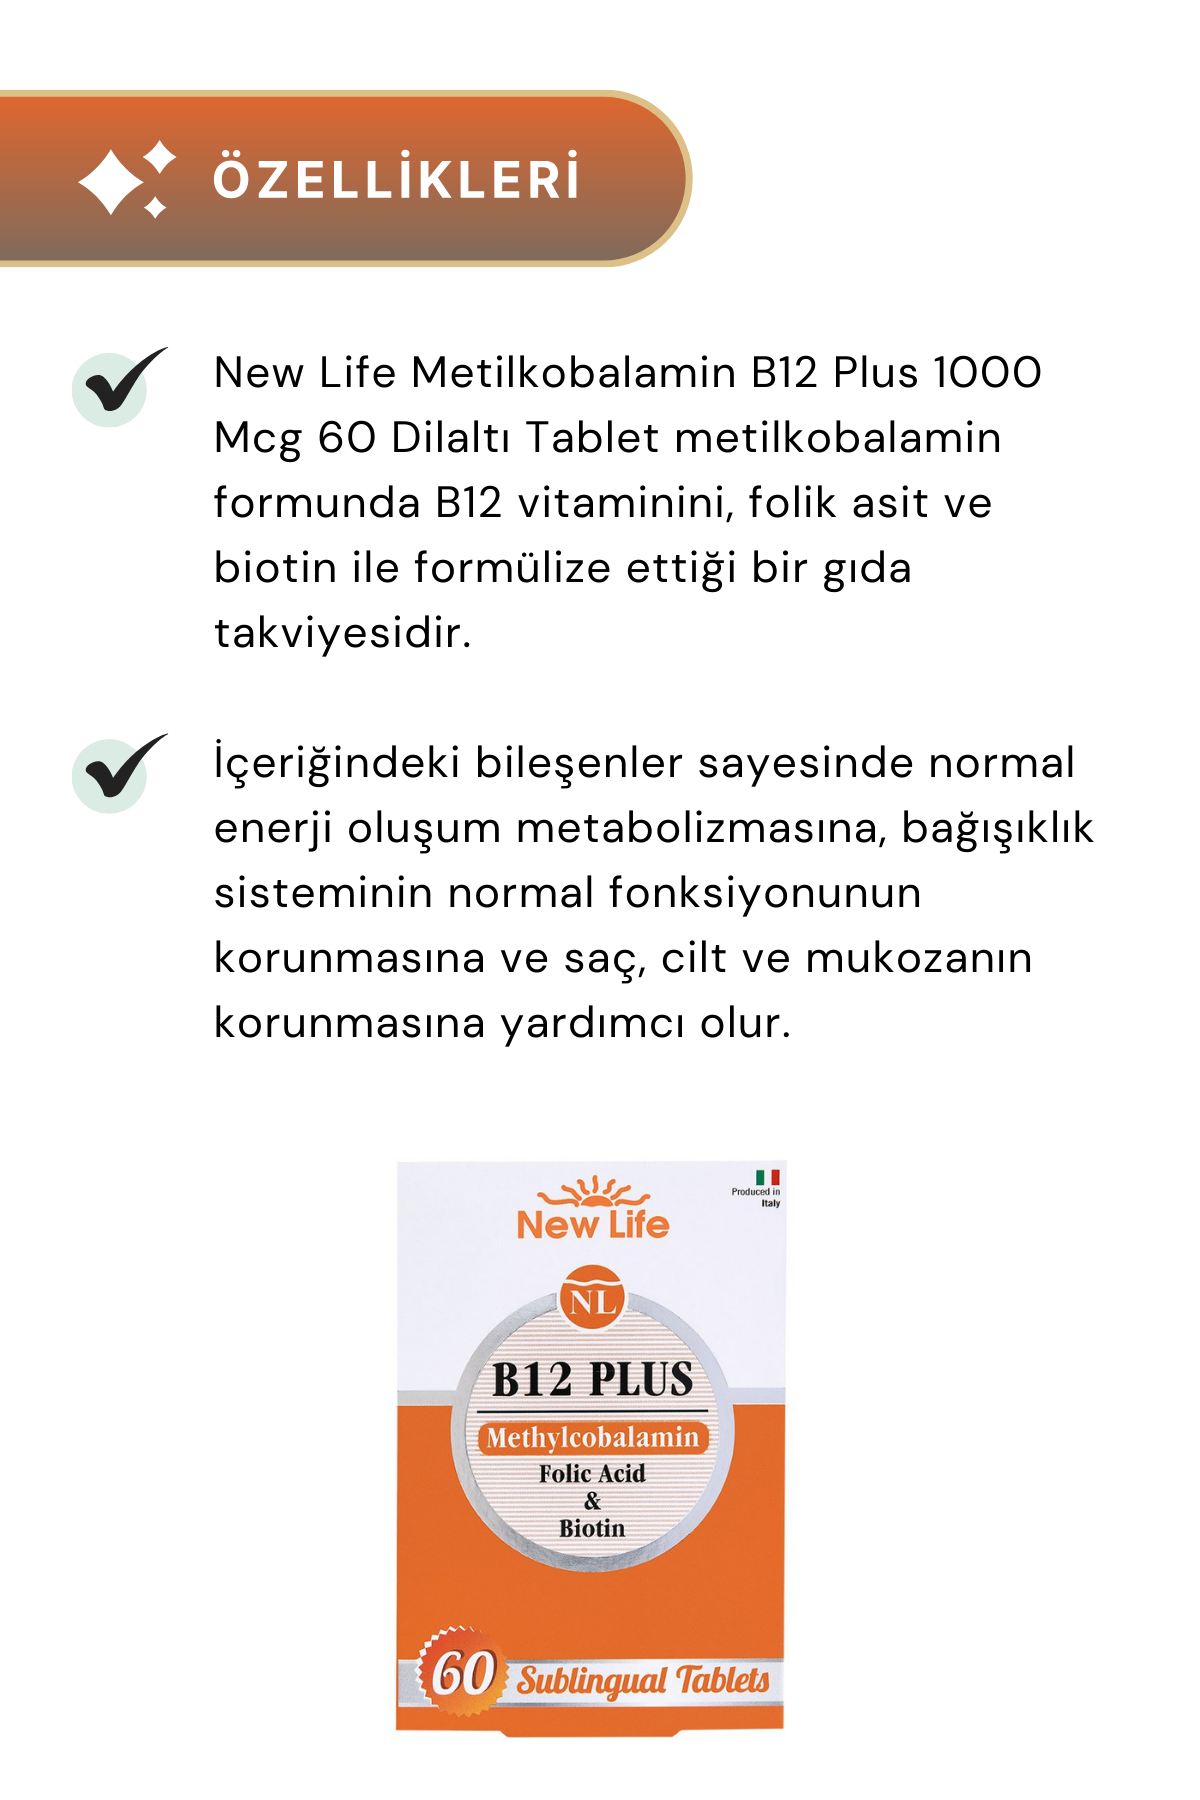 New Life B12 Plus Methylcobalamin 60 Dilaltı Tablet 6'lı Paket